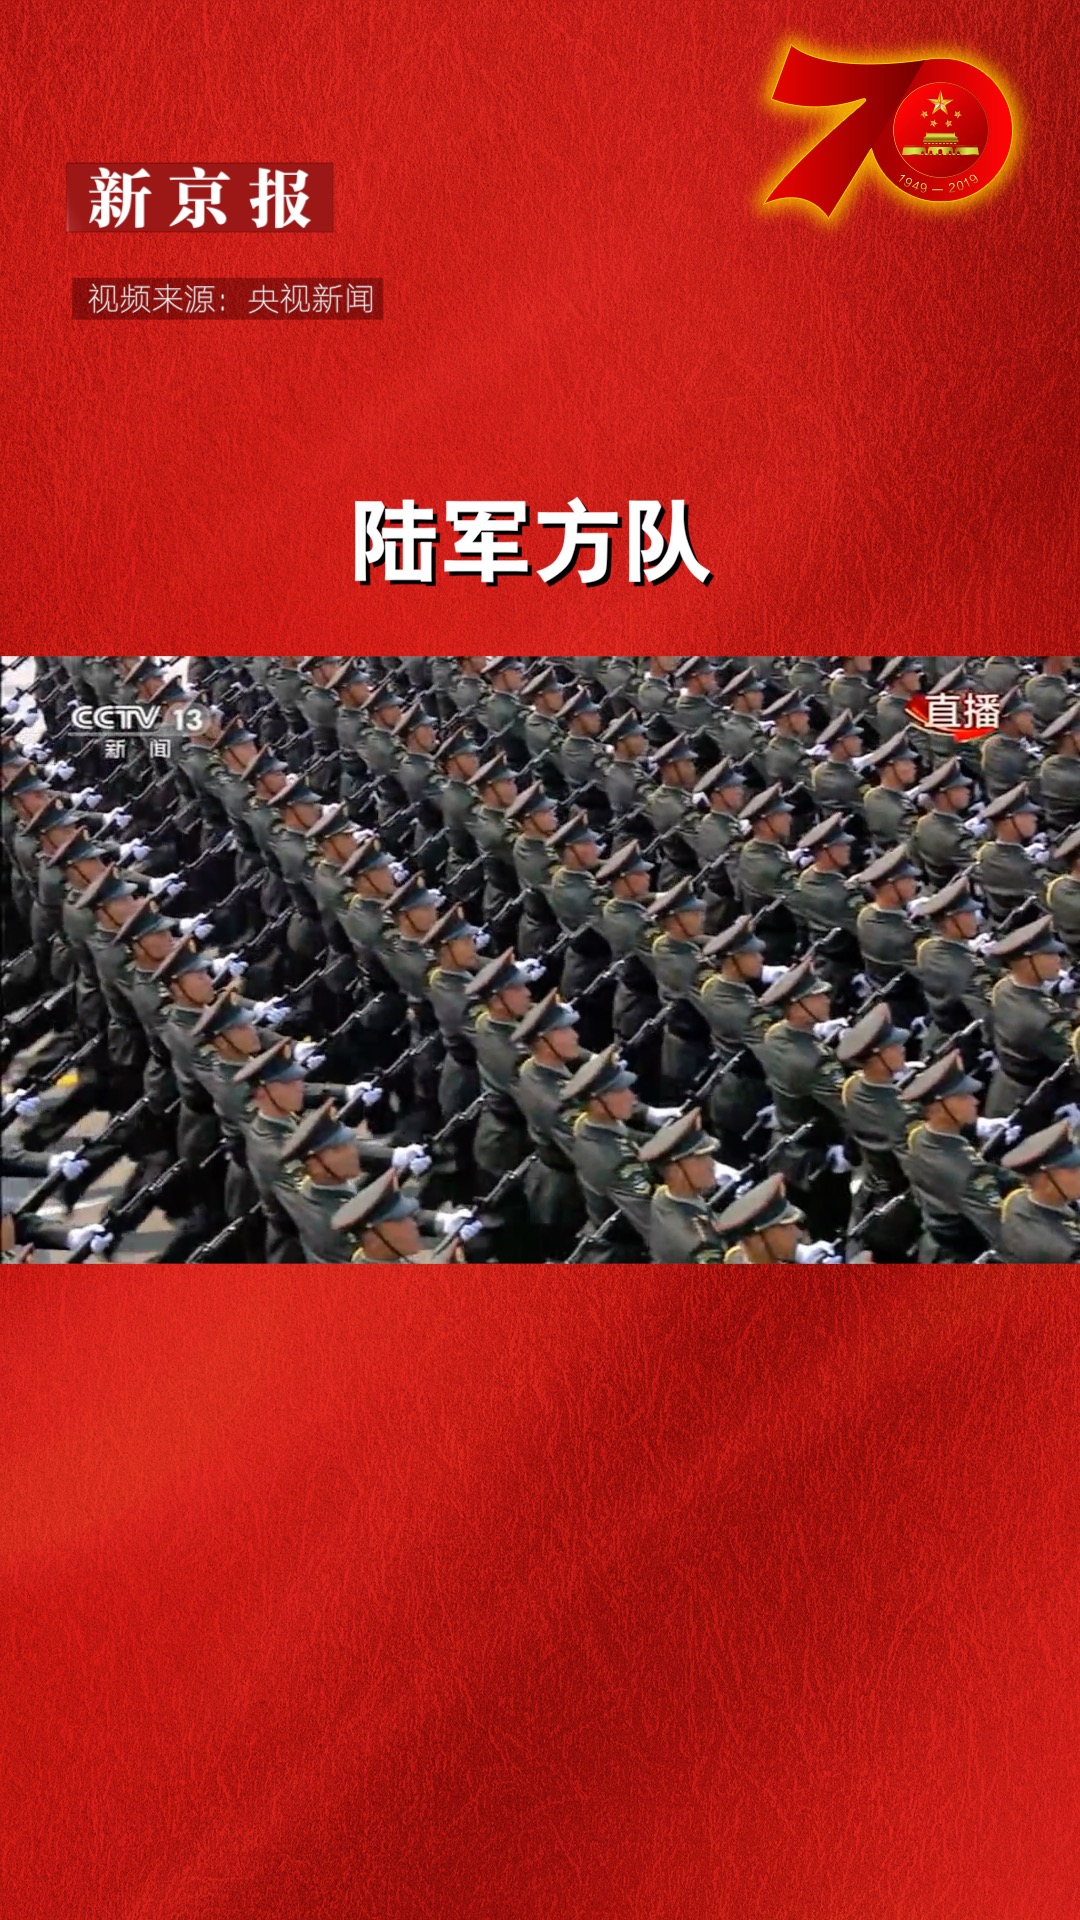 庆祝新中国成立70周年大阅兵:陆军方队接受检阅